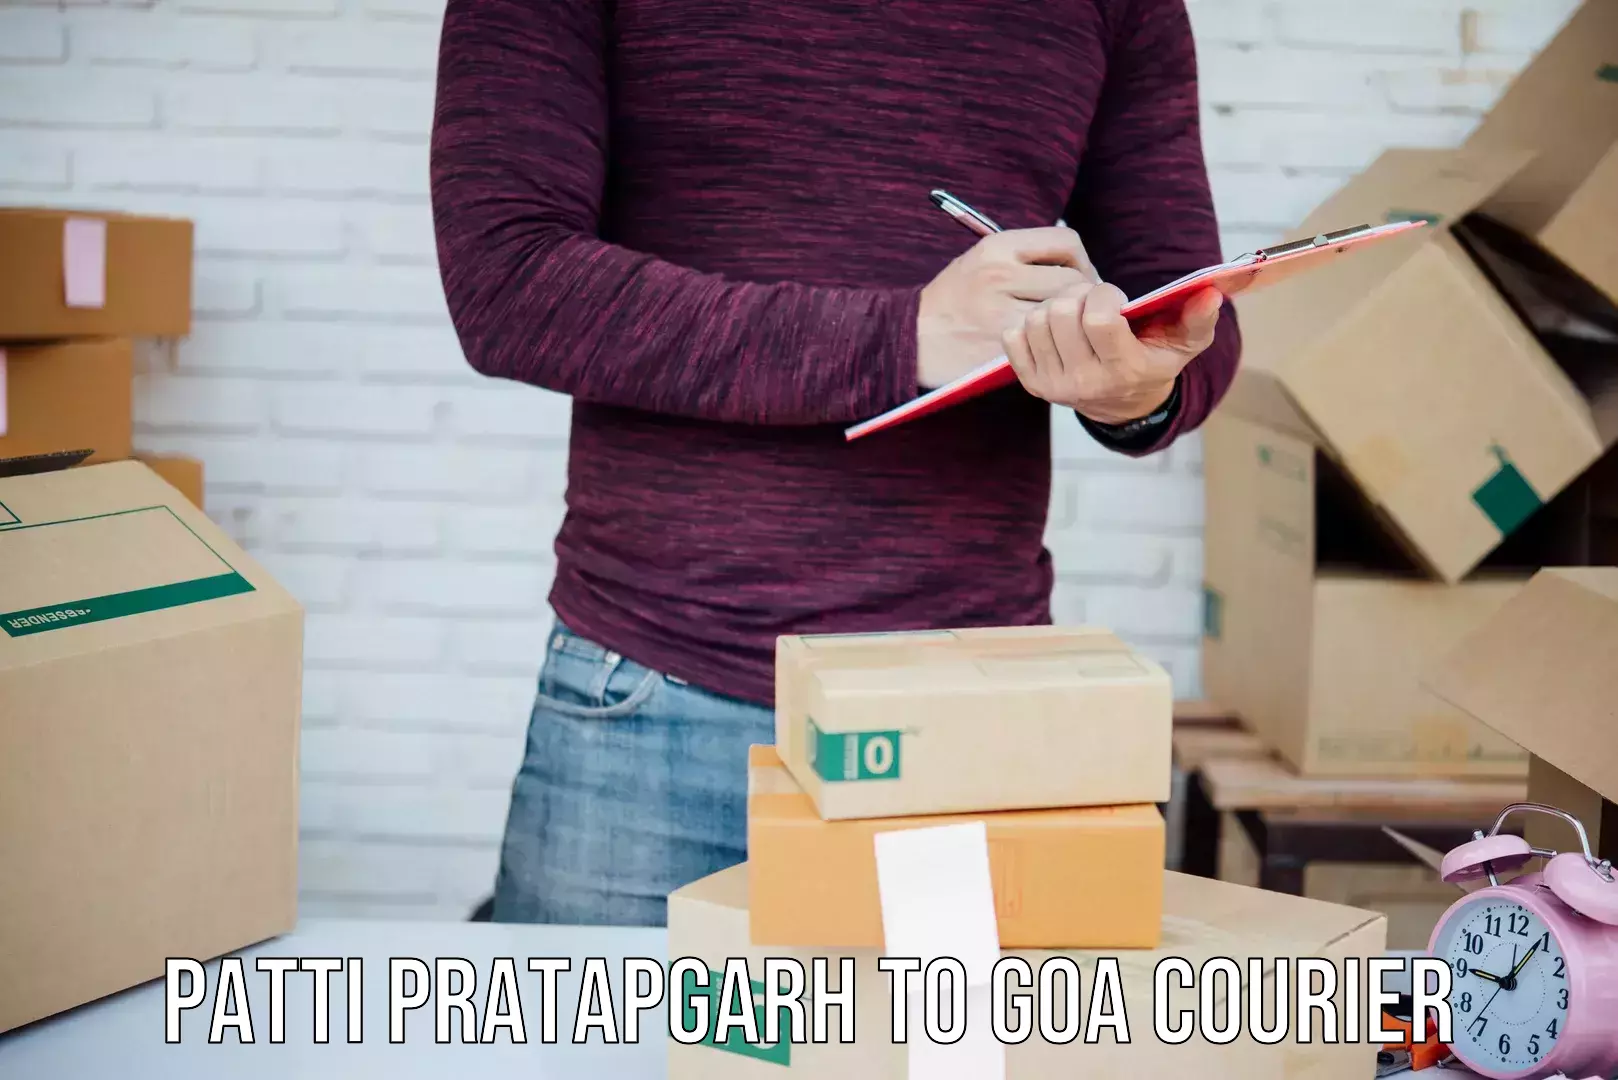 24/7 shipping services Patti Pratapgarh to IIT Goa